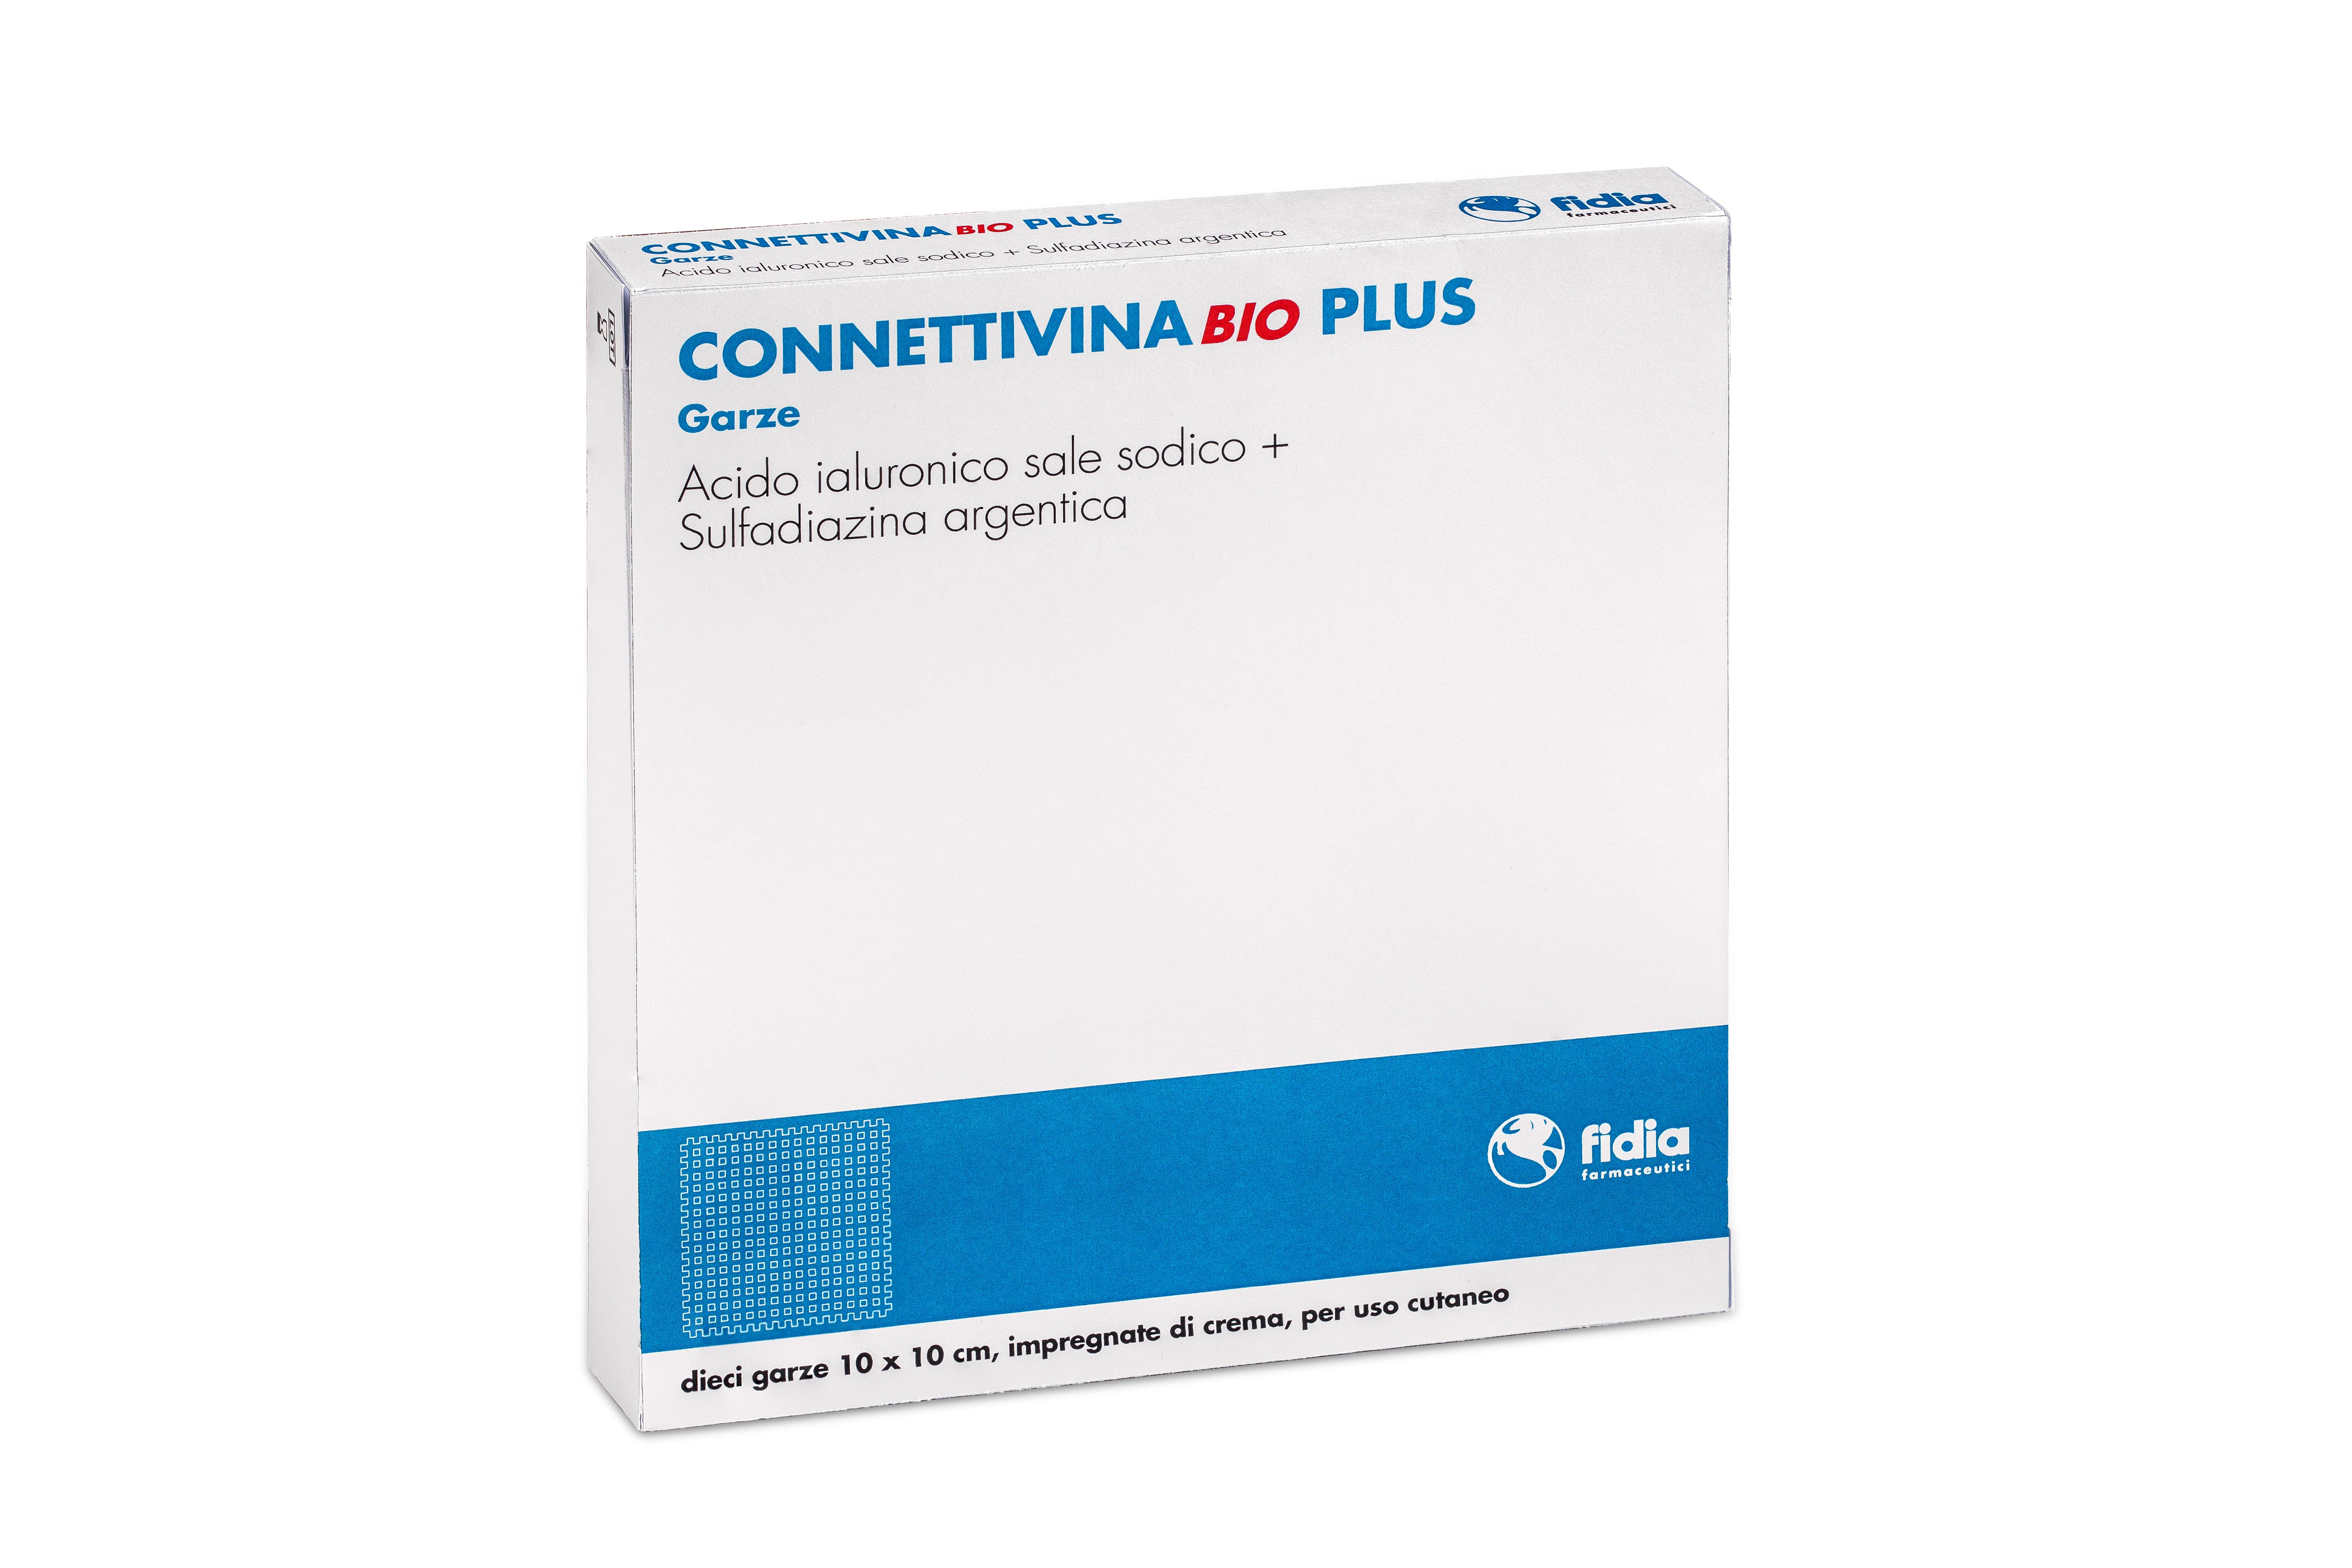 Connettivina Bio Plus Garze 10x10cm Fidia 10 Pezzi